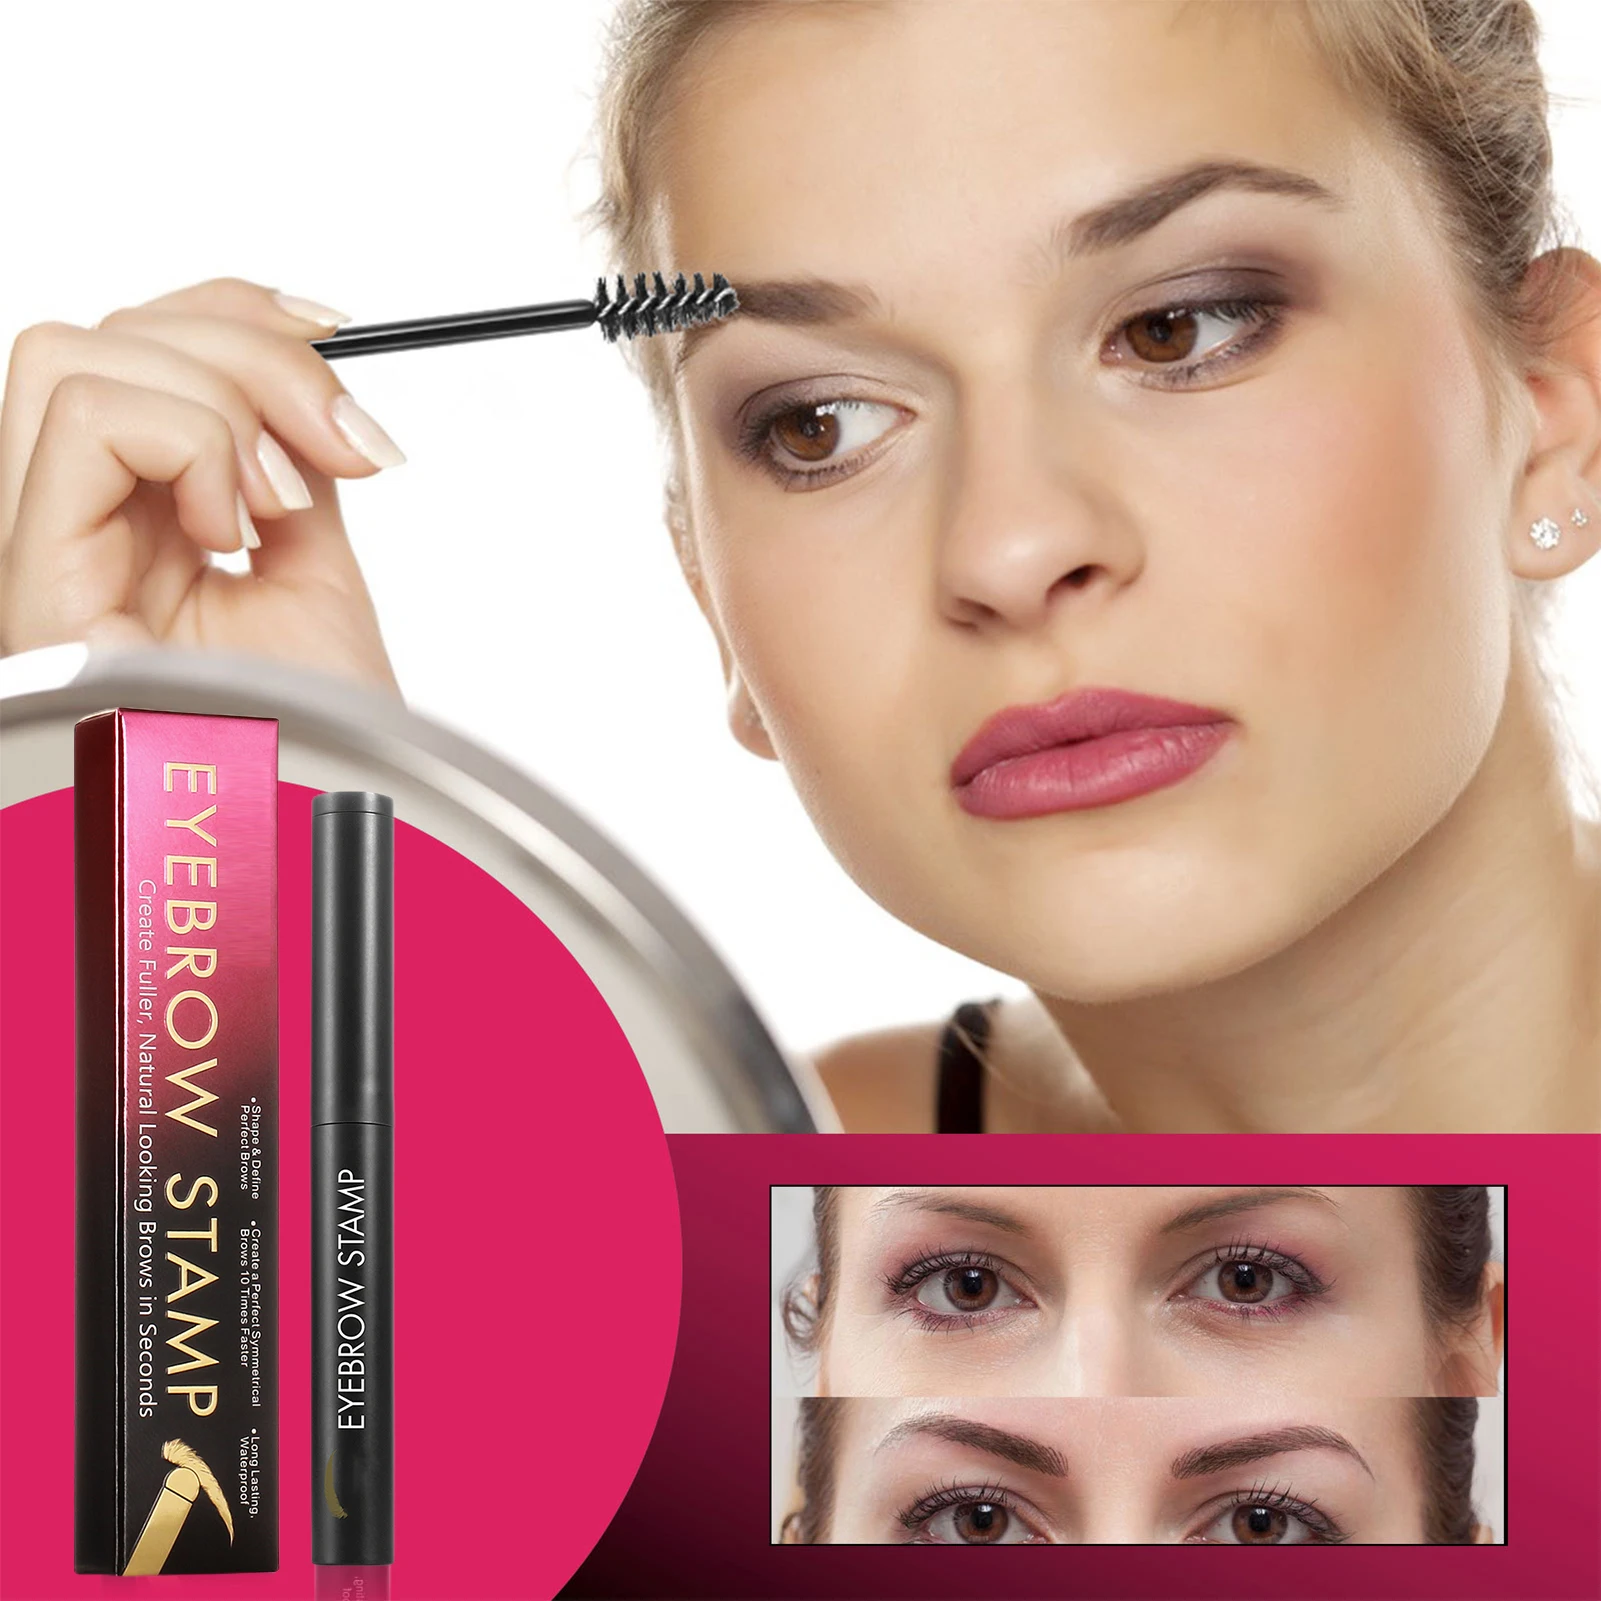 

Makeup Eyebrow Powder Pen Set Natural Looking Reusable Makeup Eye Brow Powder Kit Eyebrow Definer Shaping Kit For Women Girls